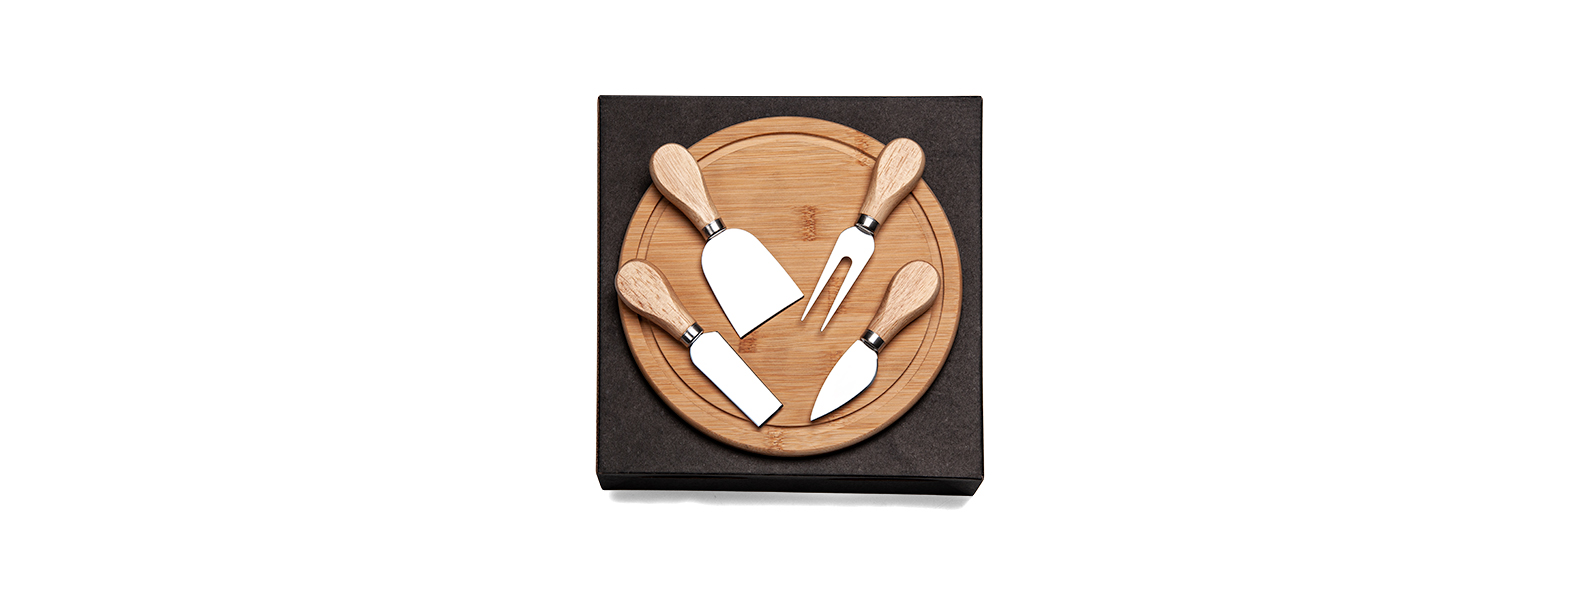 Kit para queijo. Conta com tábua redonda em bambu; três facas e garfo para queijos em madeira / inox. Tábua confeccionada com tripla camada invertida, para dar maior durabilidade e não deformar com o passar do tempo.